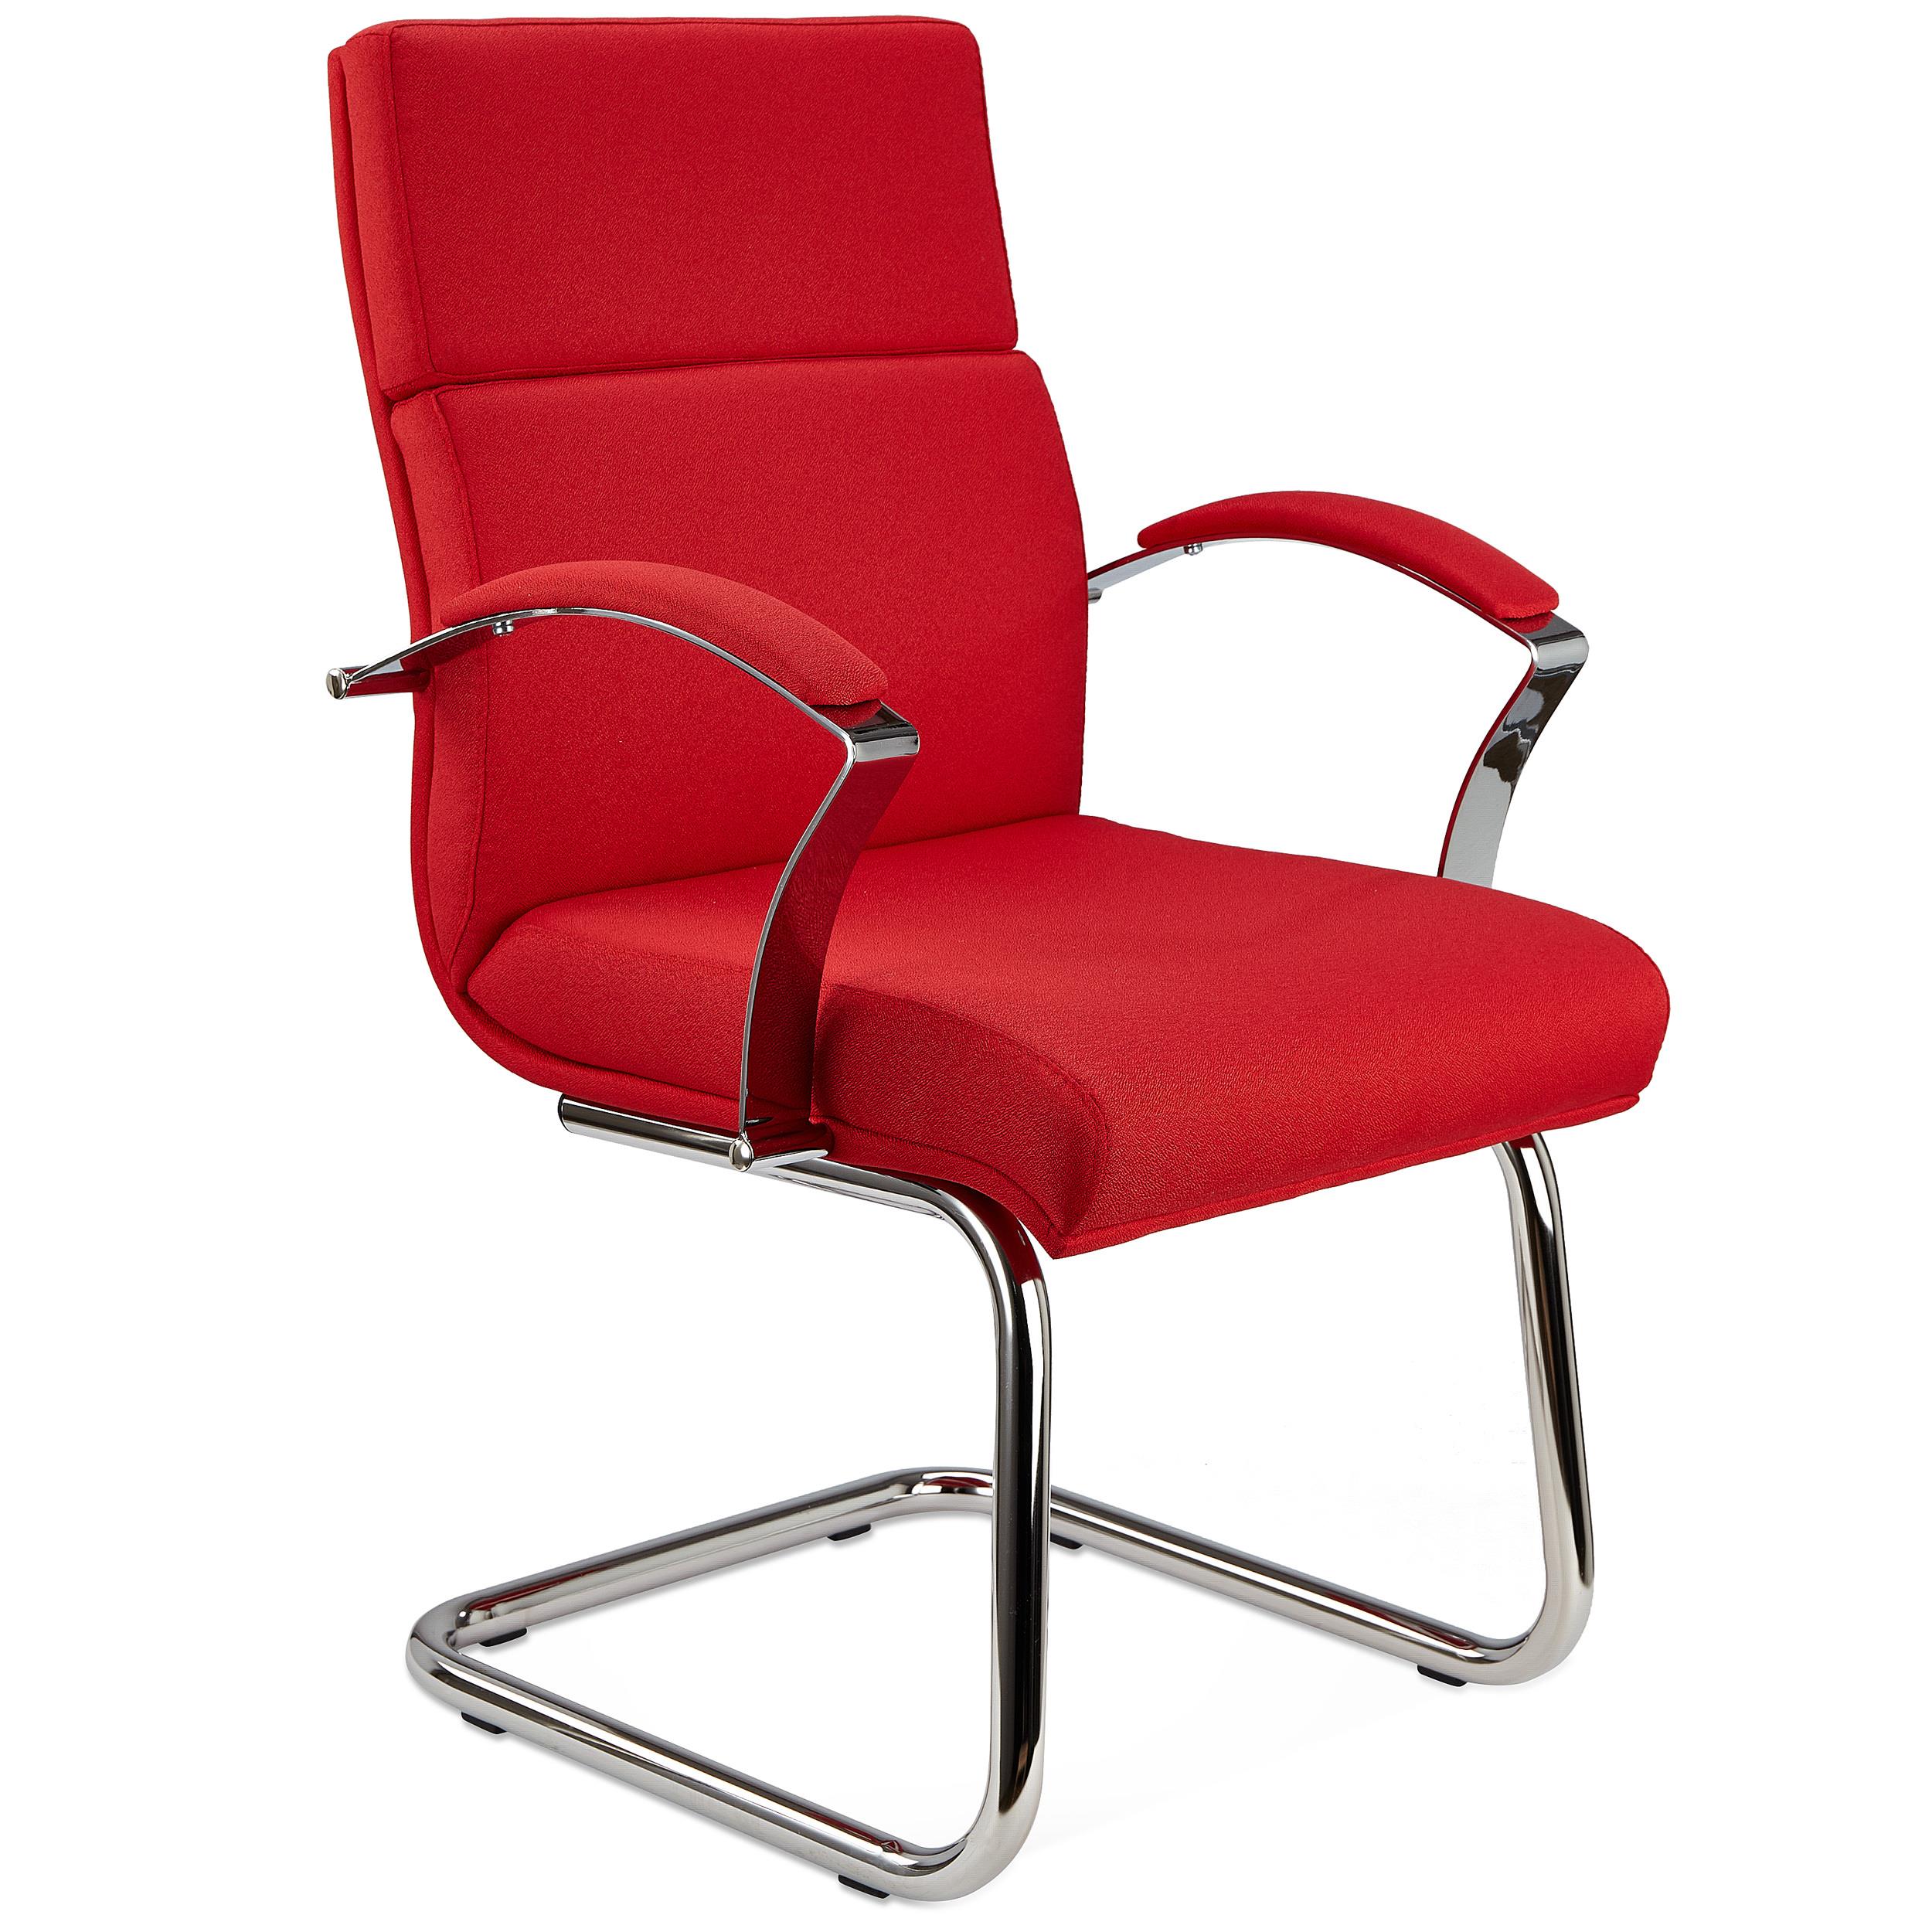 Chaise visiteur RABAT TISSU, Grande Qualité et Design, couleur Rouge